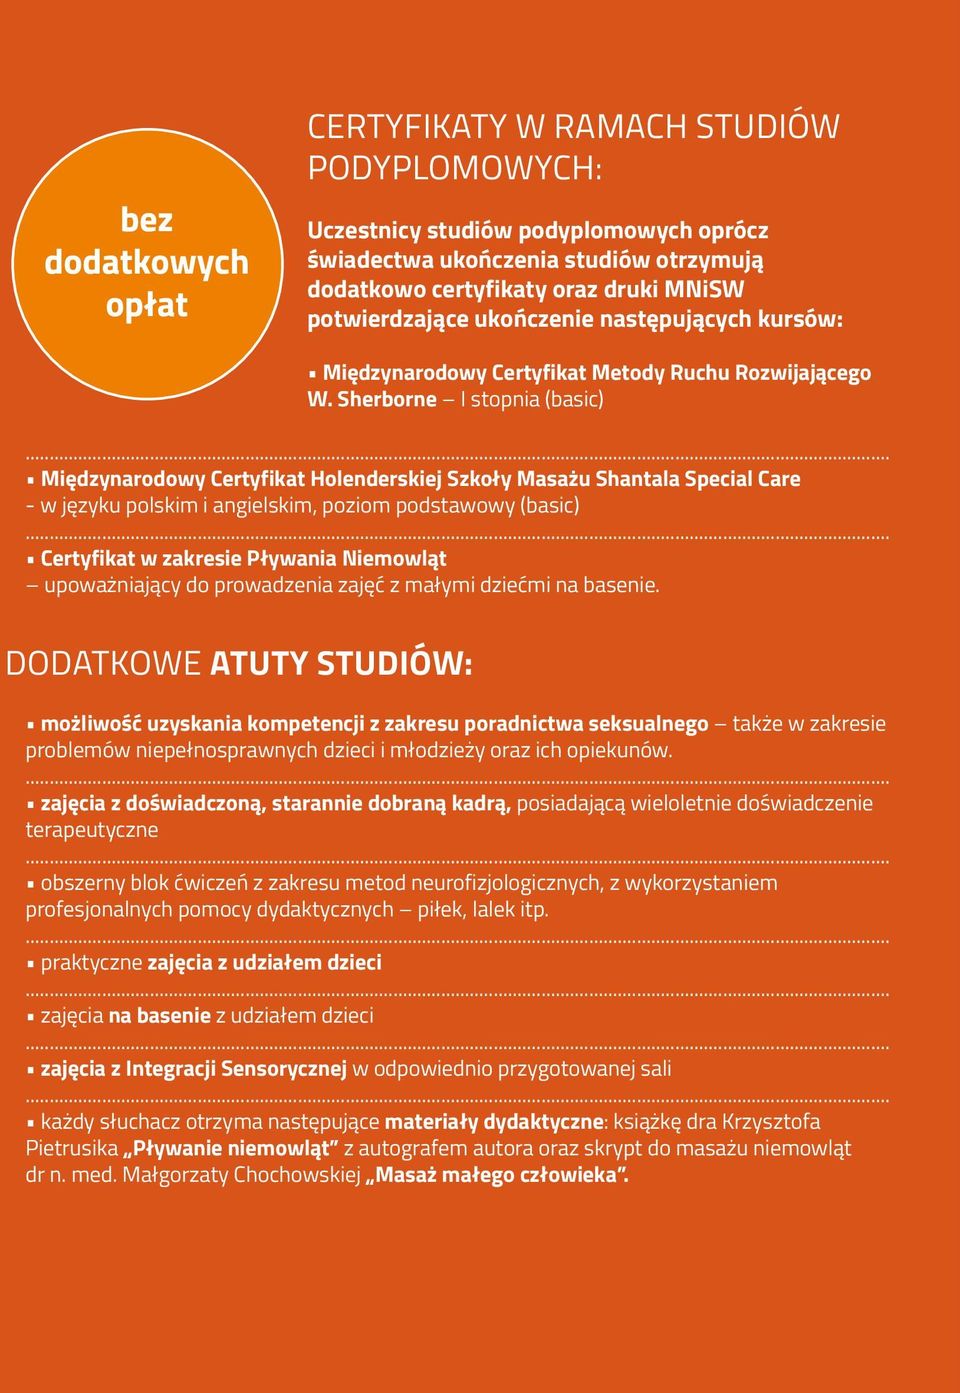 .. Międzynarodowy Certyfikat Holenderskiej Szkoły Masażu Shantala Special Care - w języku polskim i angielskim, poziom podstawowy (basic).